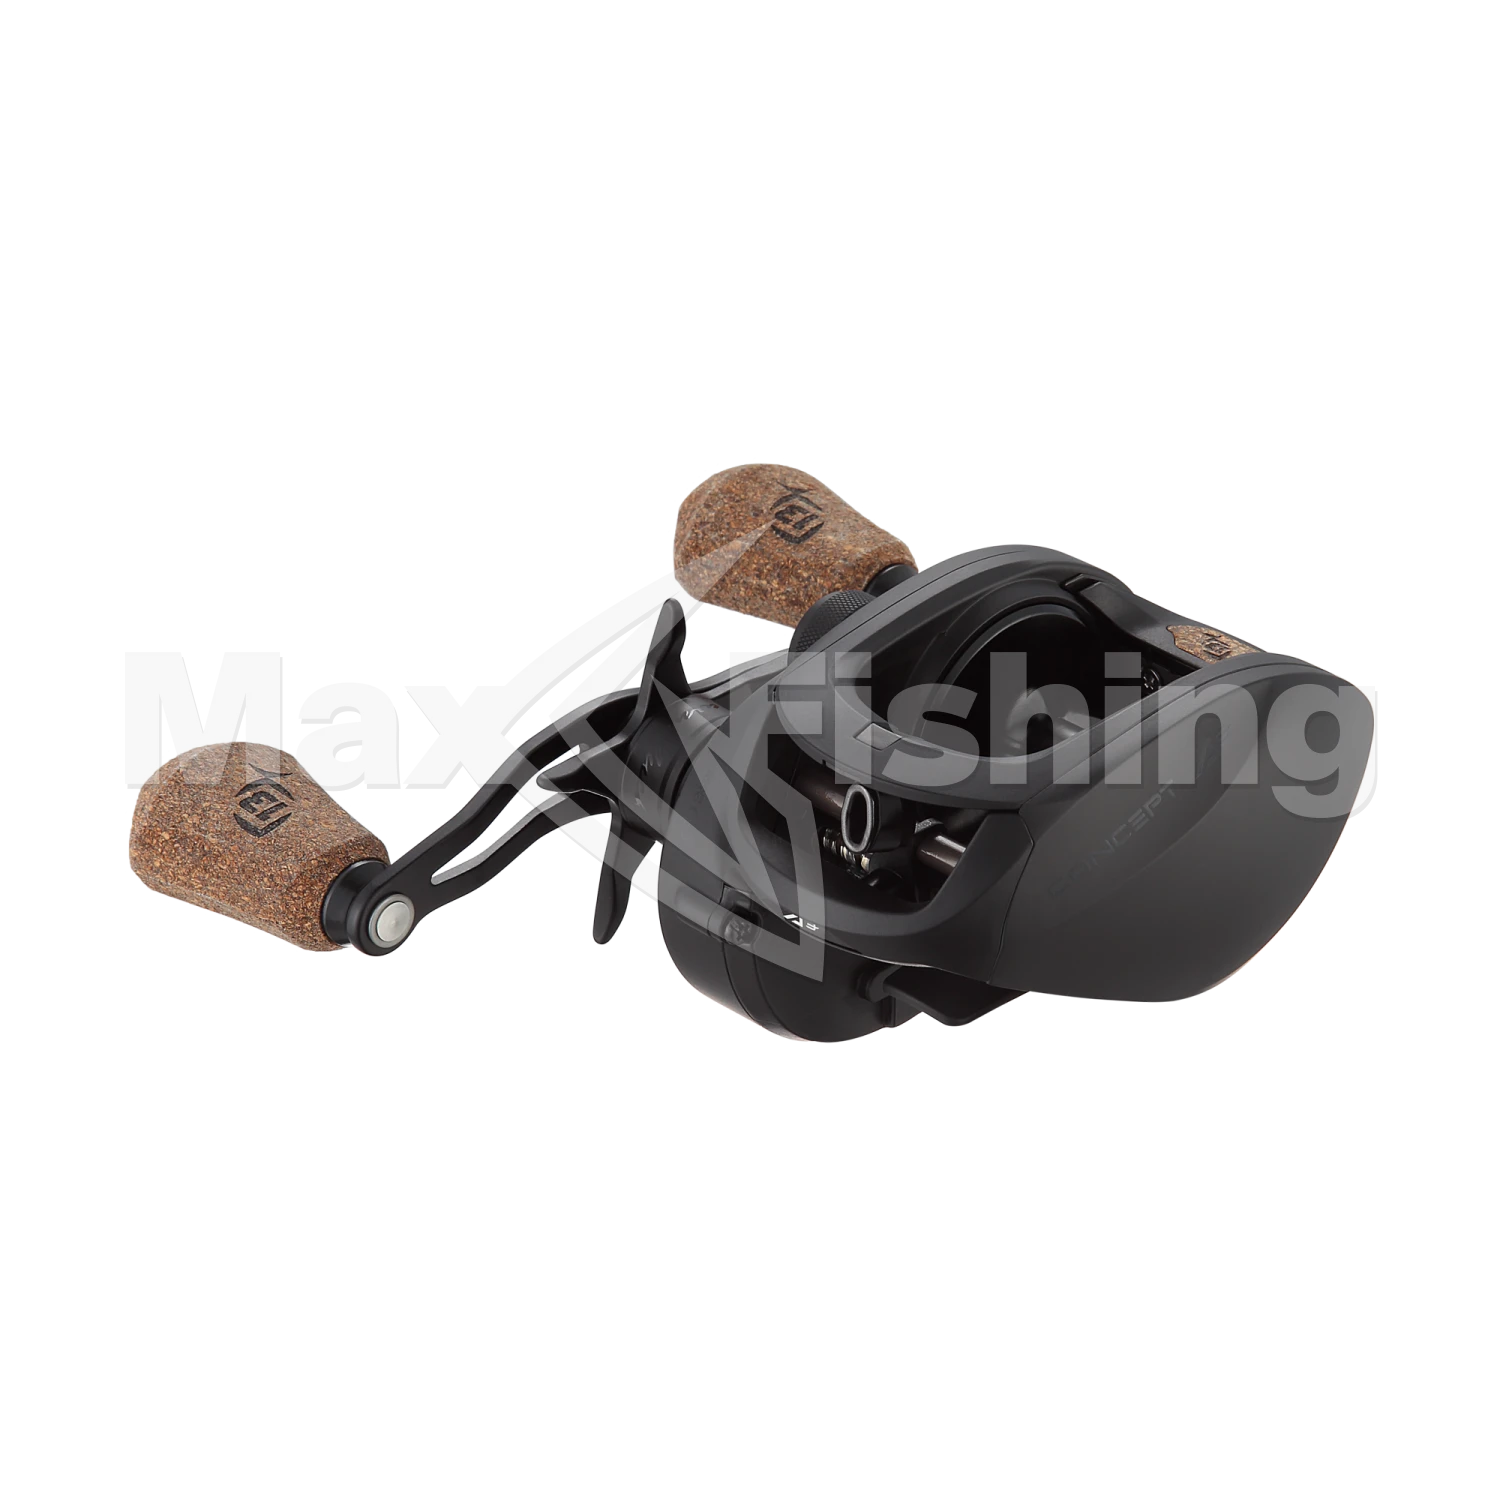 Катушка мультипликаторная 13 Fishing Concept A3 Casting Reel 6.3-RH